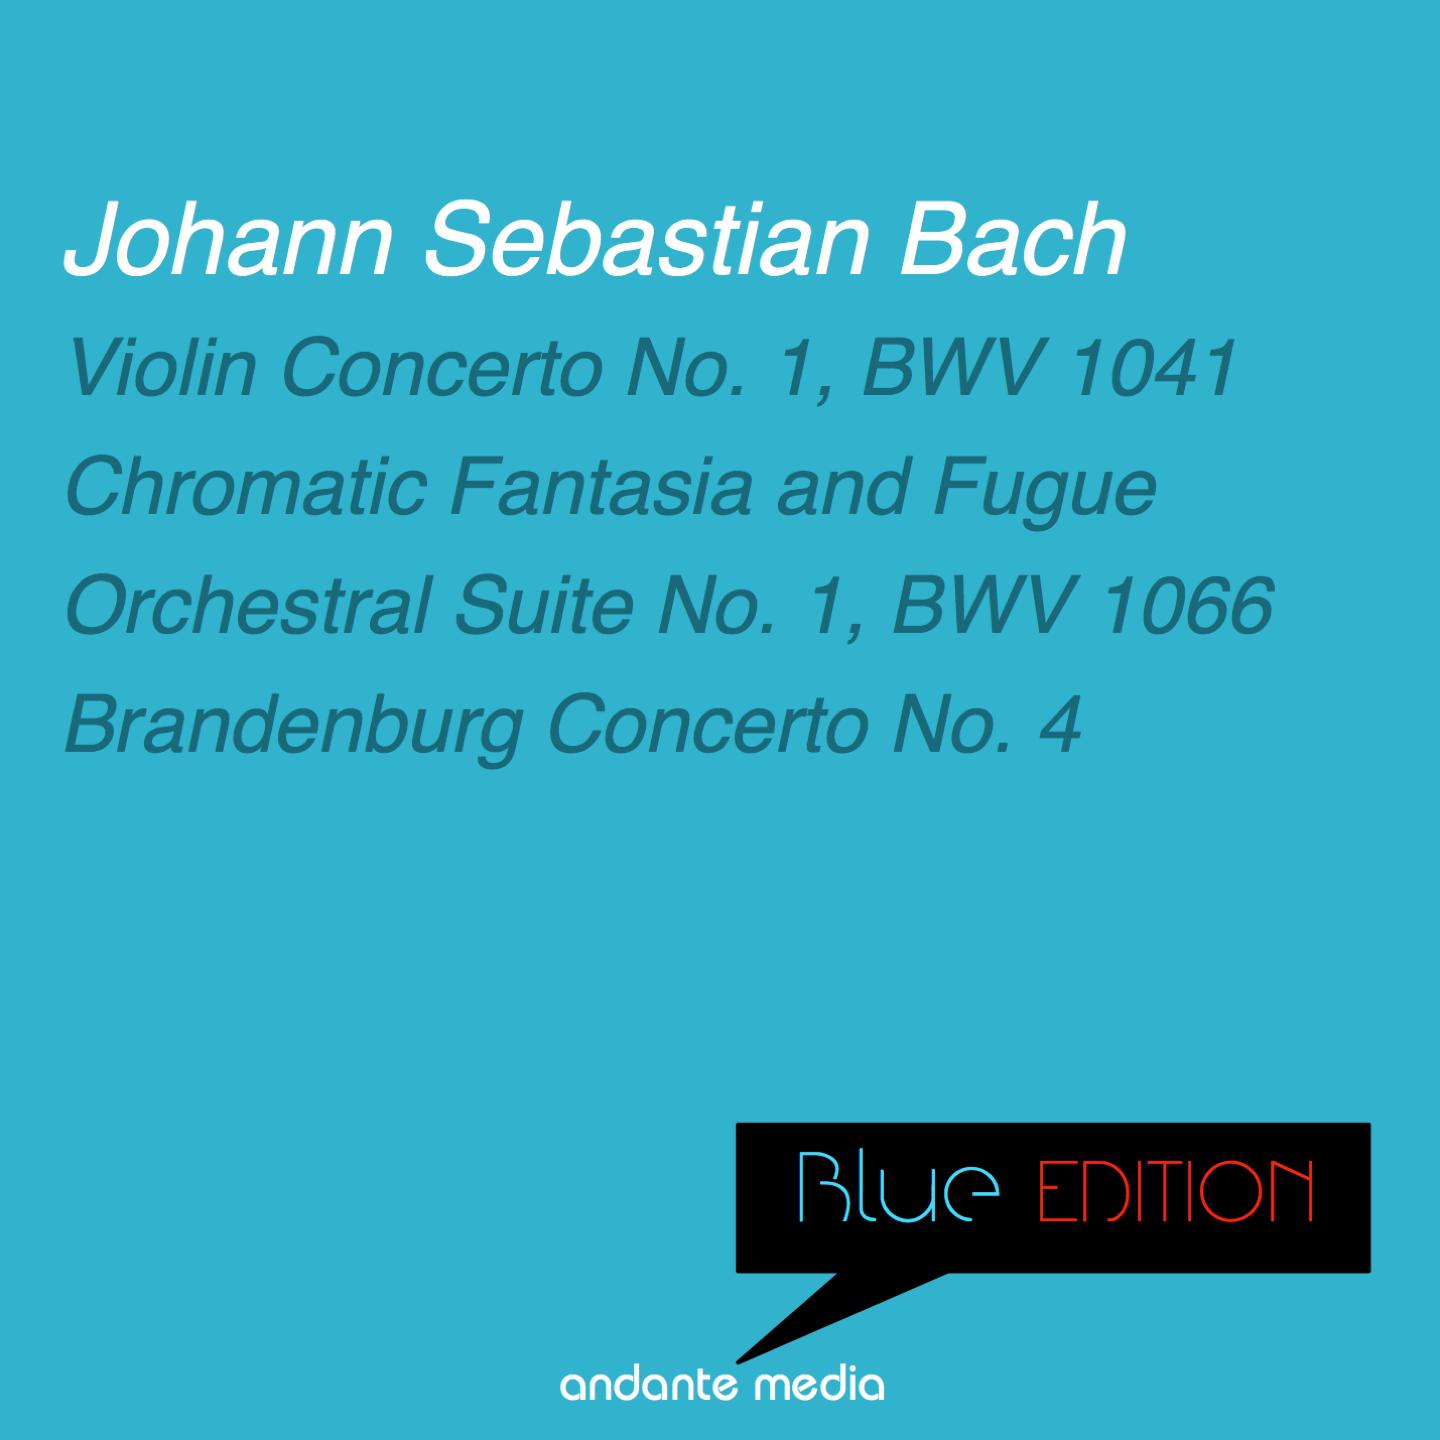 Chromatic Fantasia and Fugue in D Minor, BWV 903: I. Fantasia